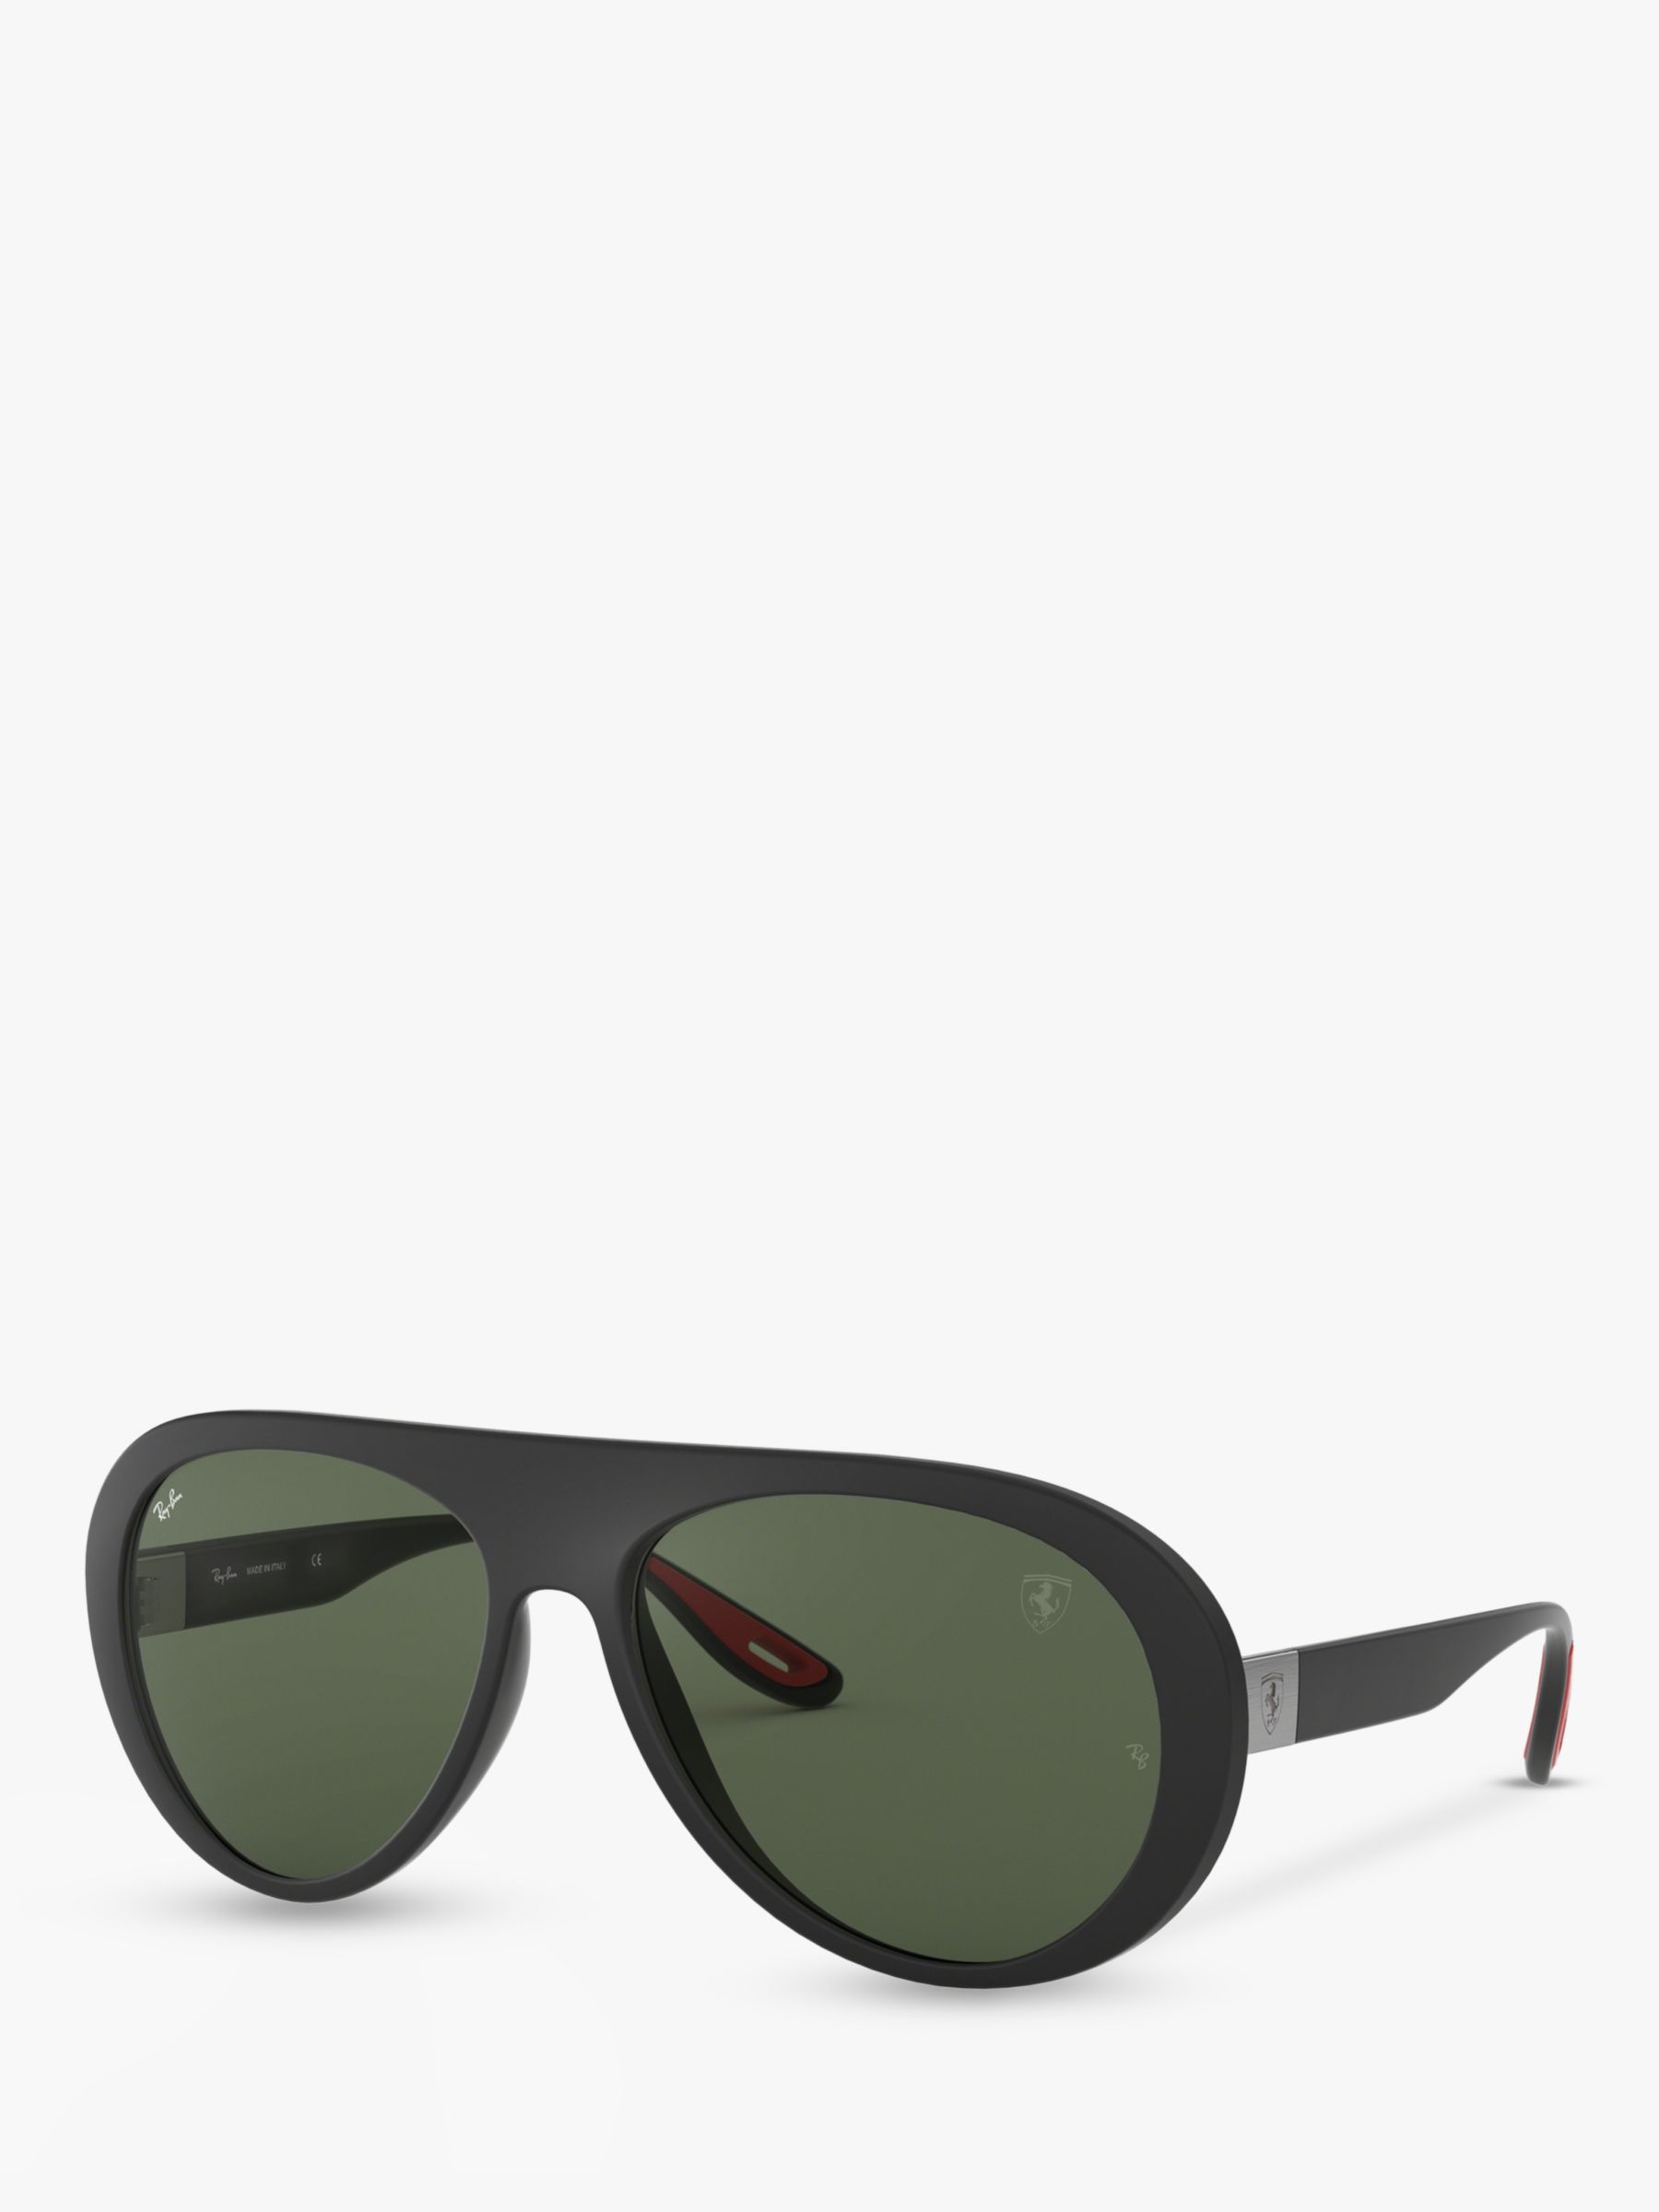 RB4310M Женские солнцезащитные очки-авиаторы Scuderia Ferrari Collection Ray-Ban, матовый черный/зеленый